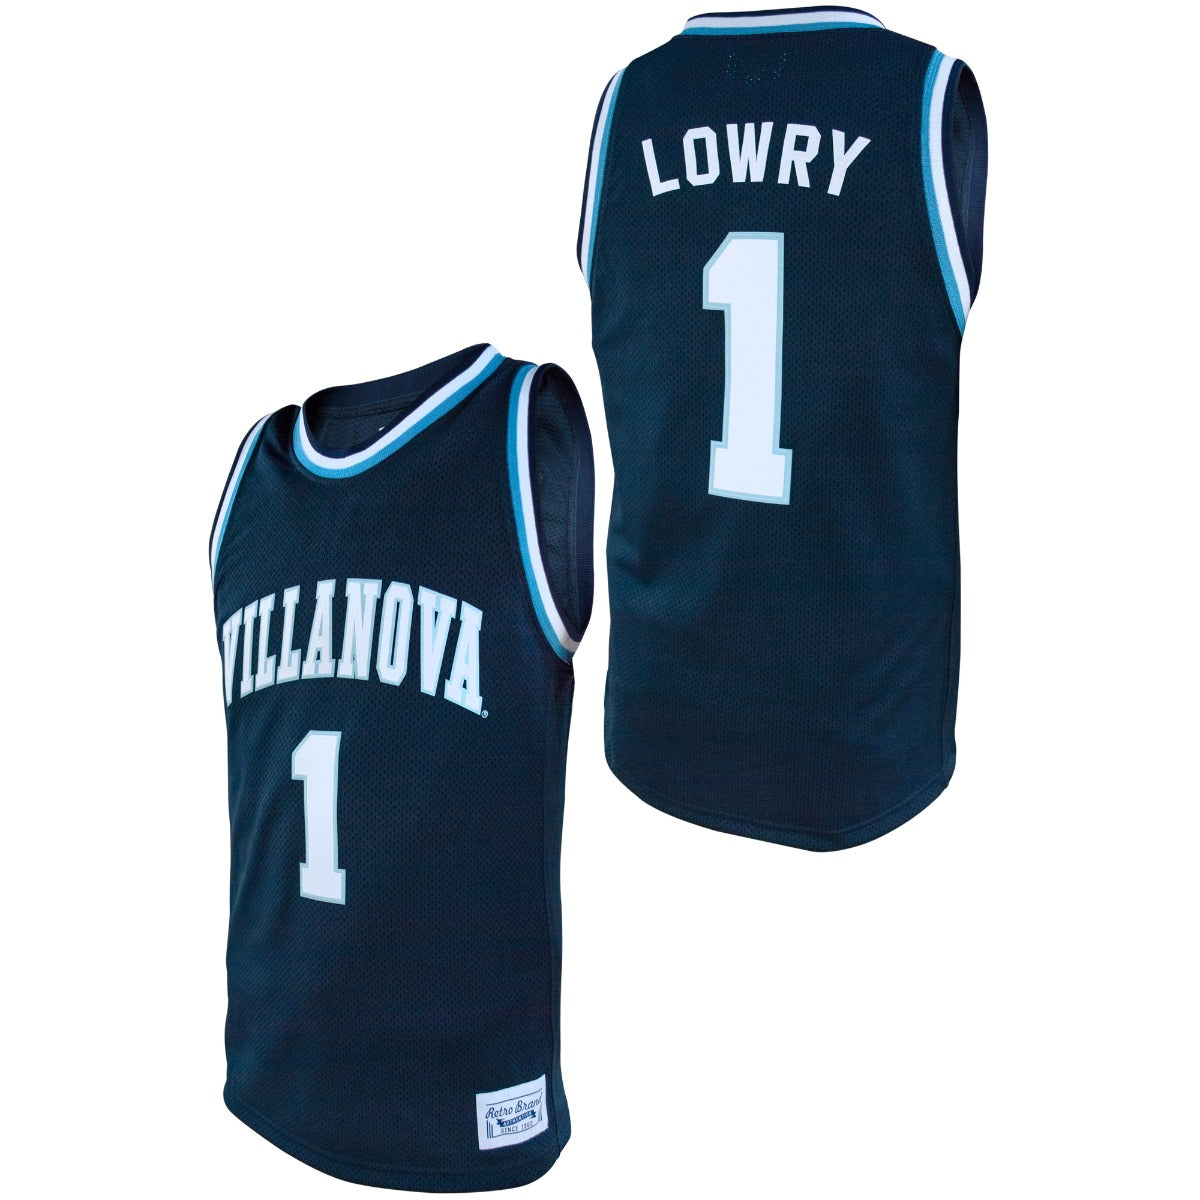 villanova wildcats basketball jersey